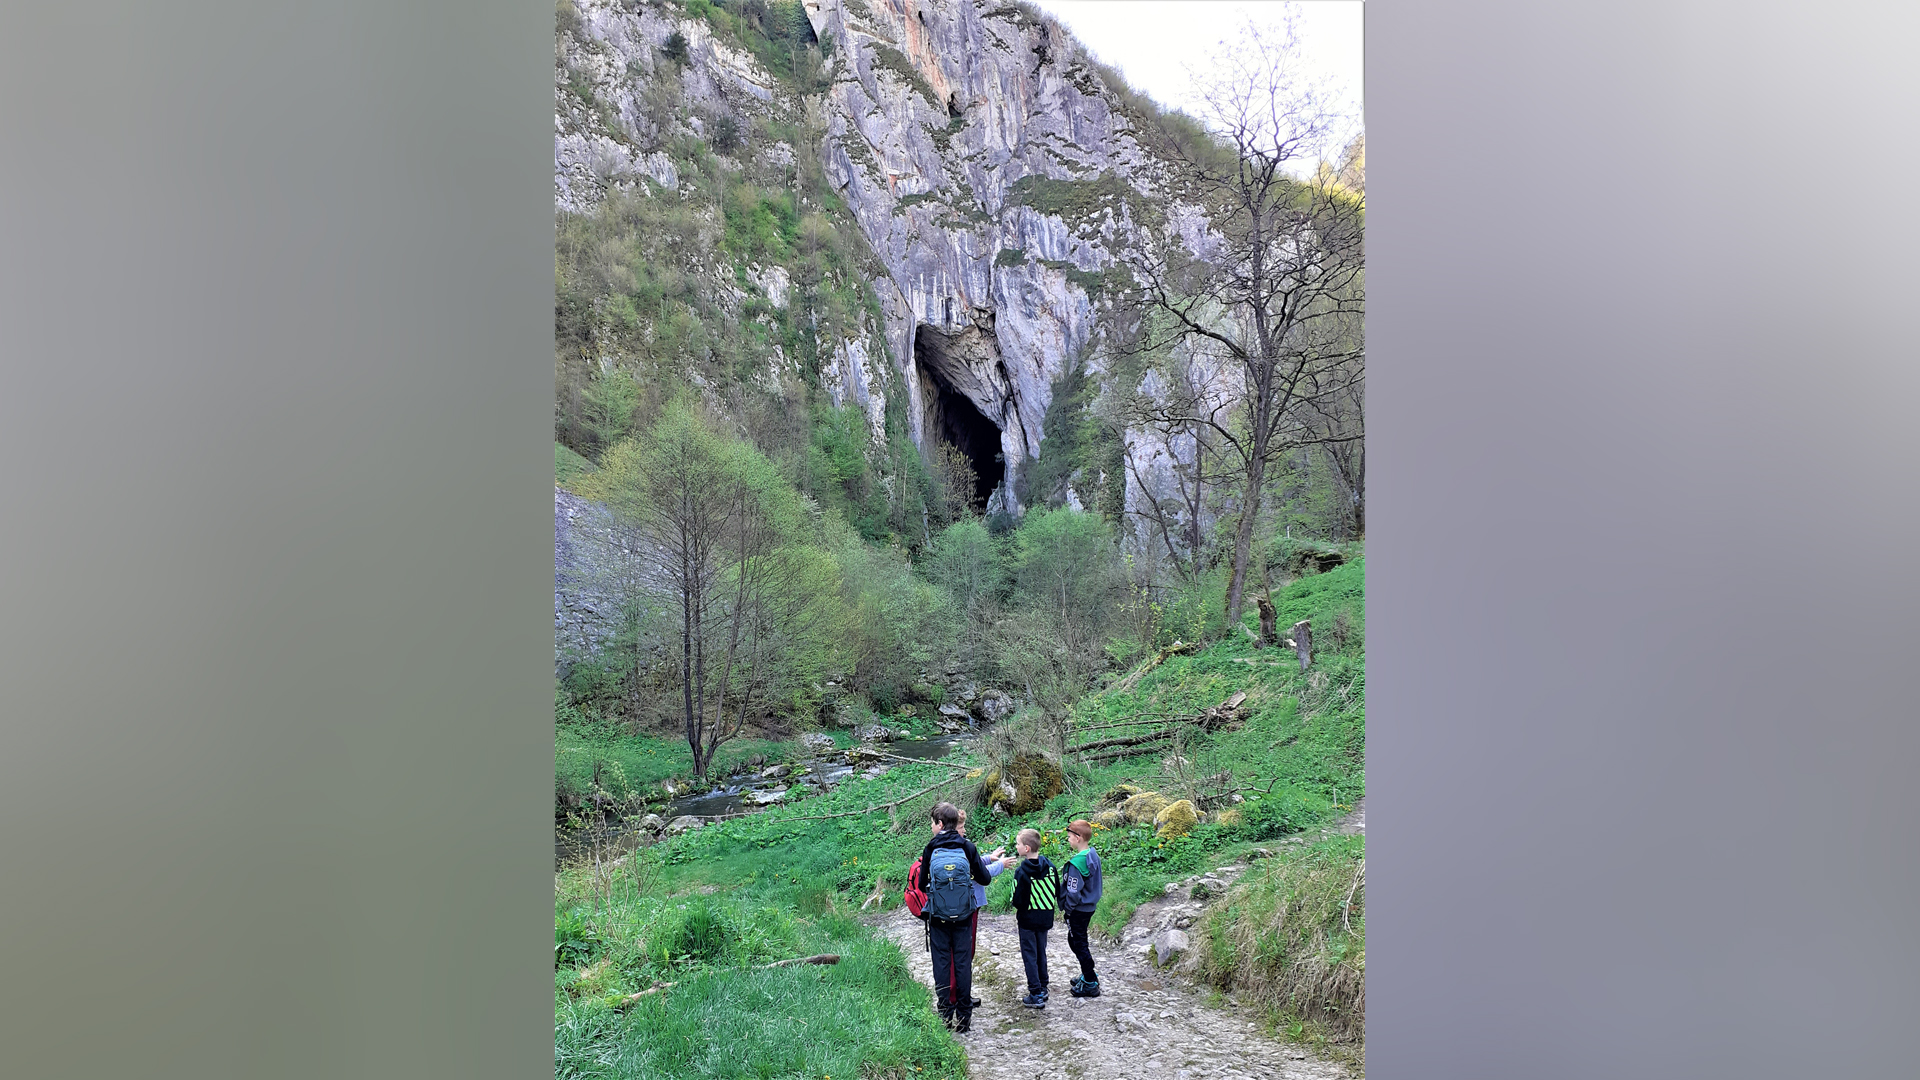 Barlangok, kilátók, vízesések és szurdokvölgyek májusi színekben